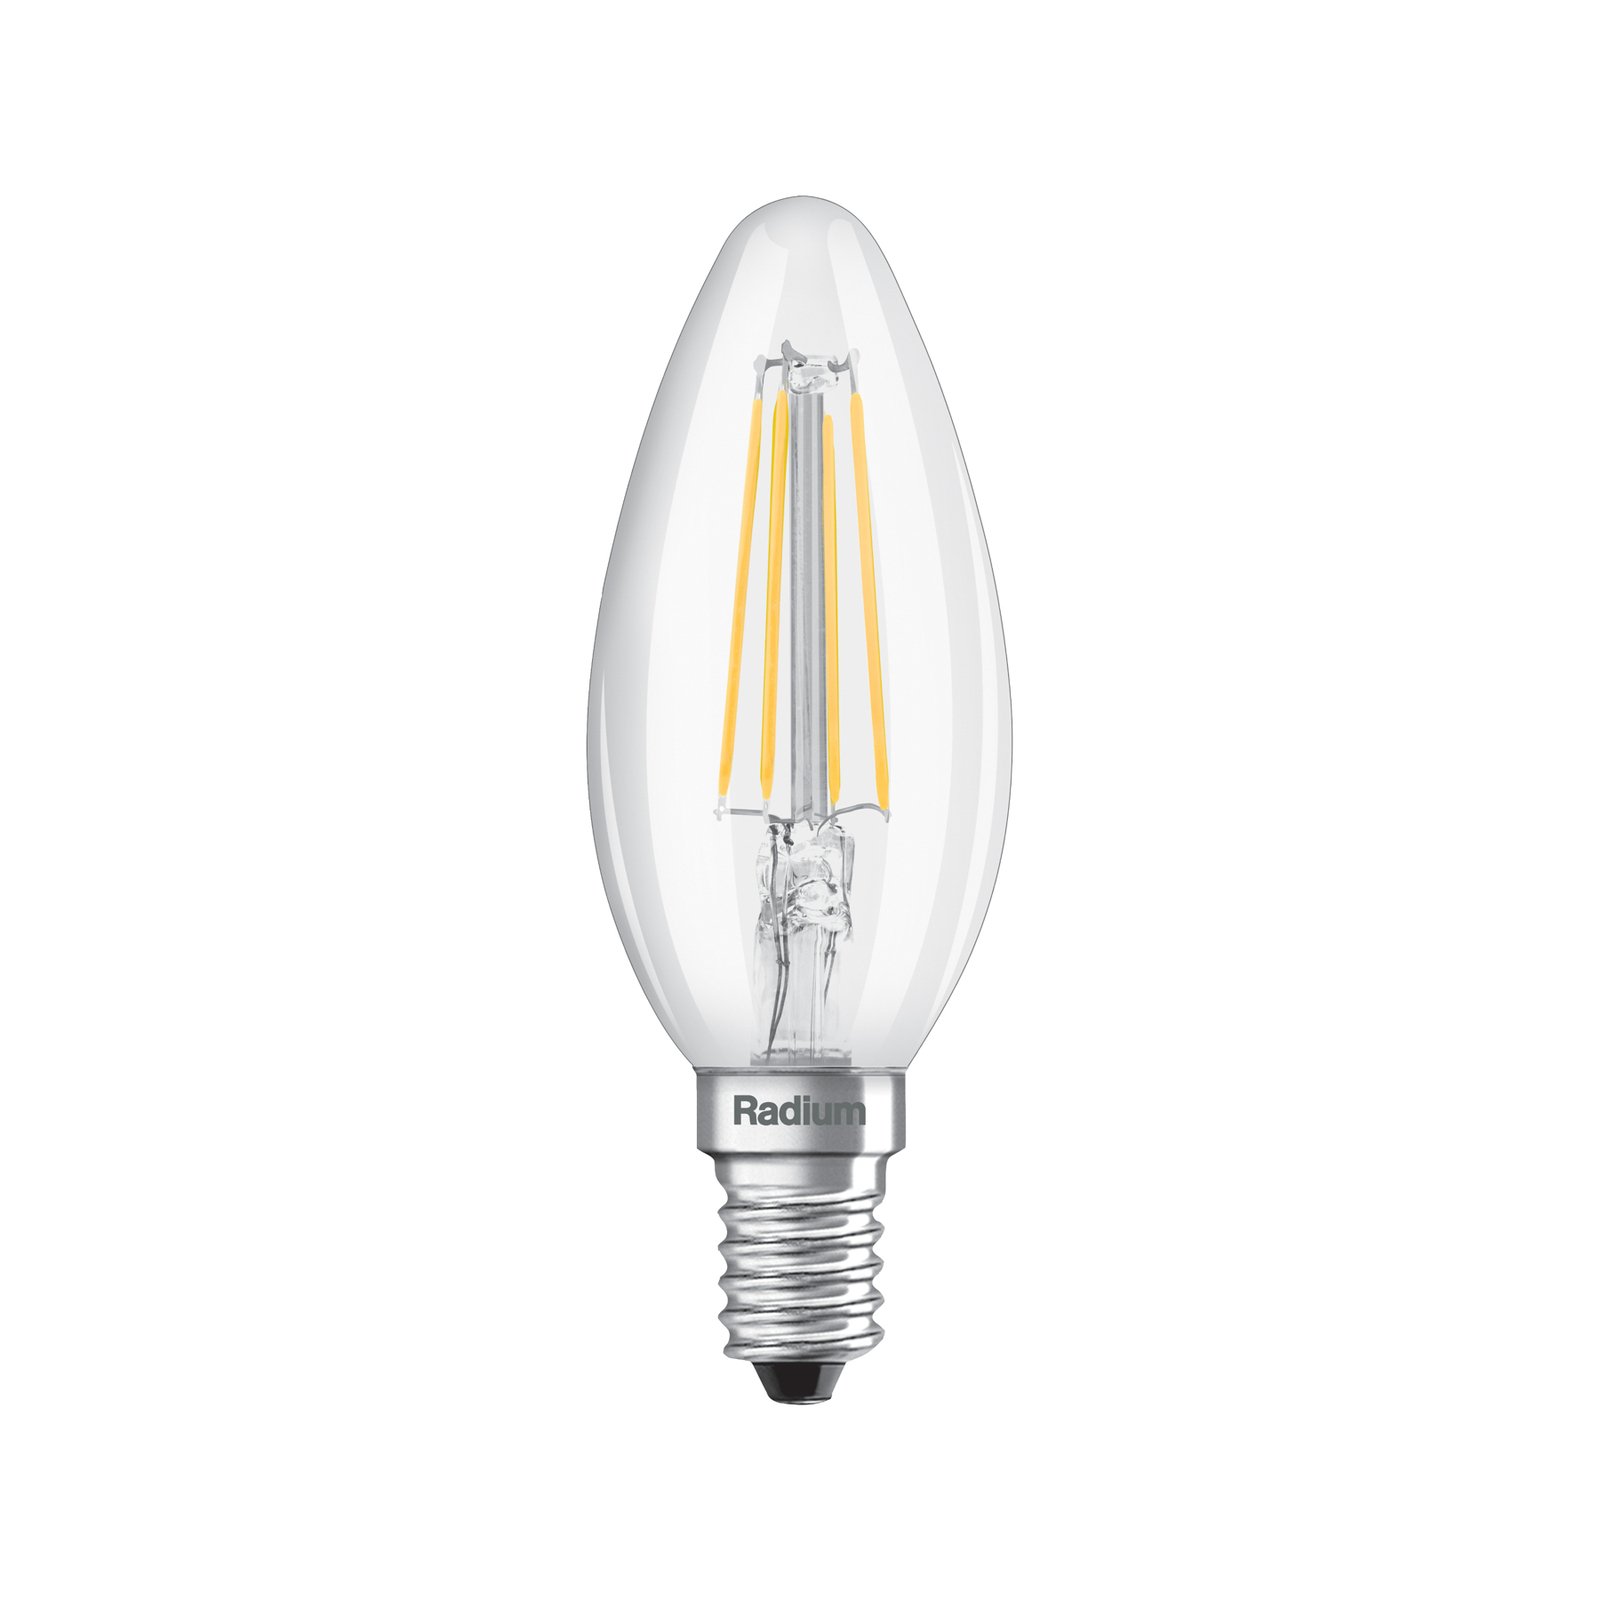 Radium candle LED bulb Essence, filament, E14 4W, 827, 470lm